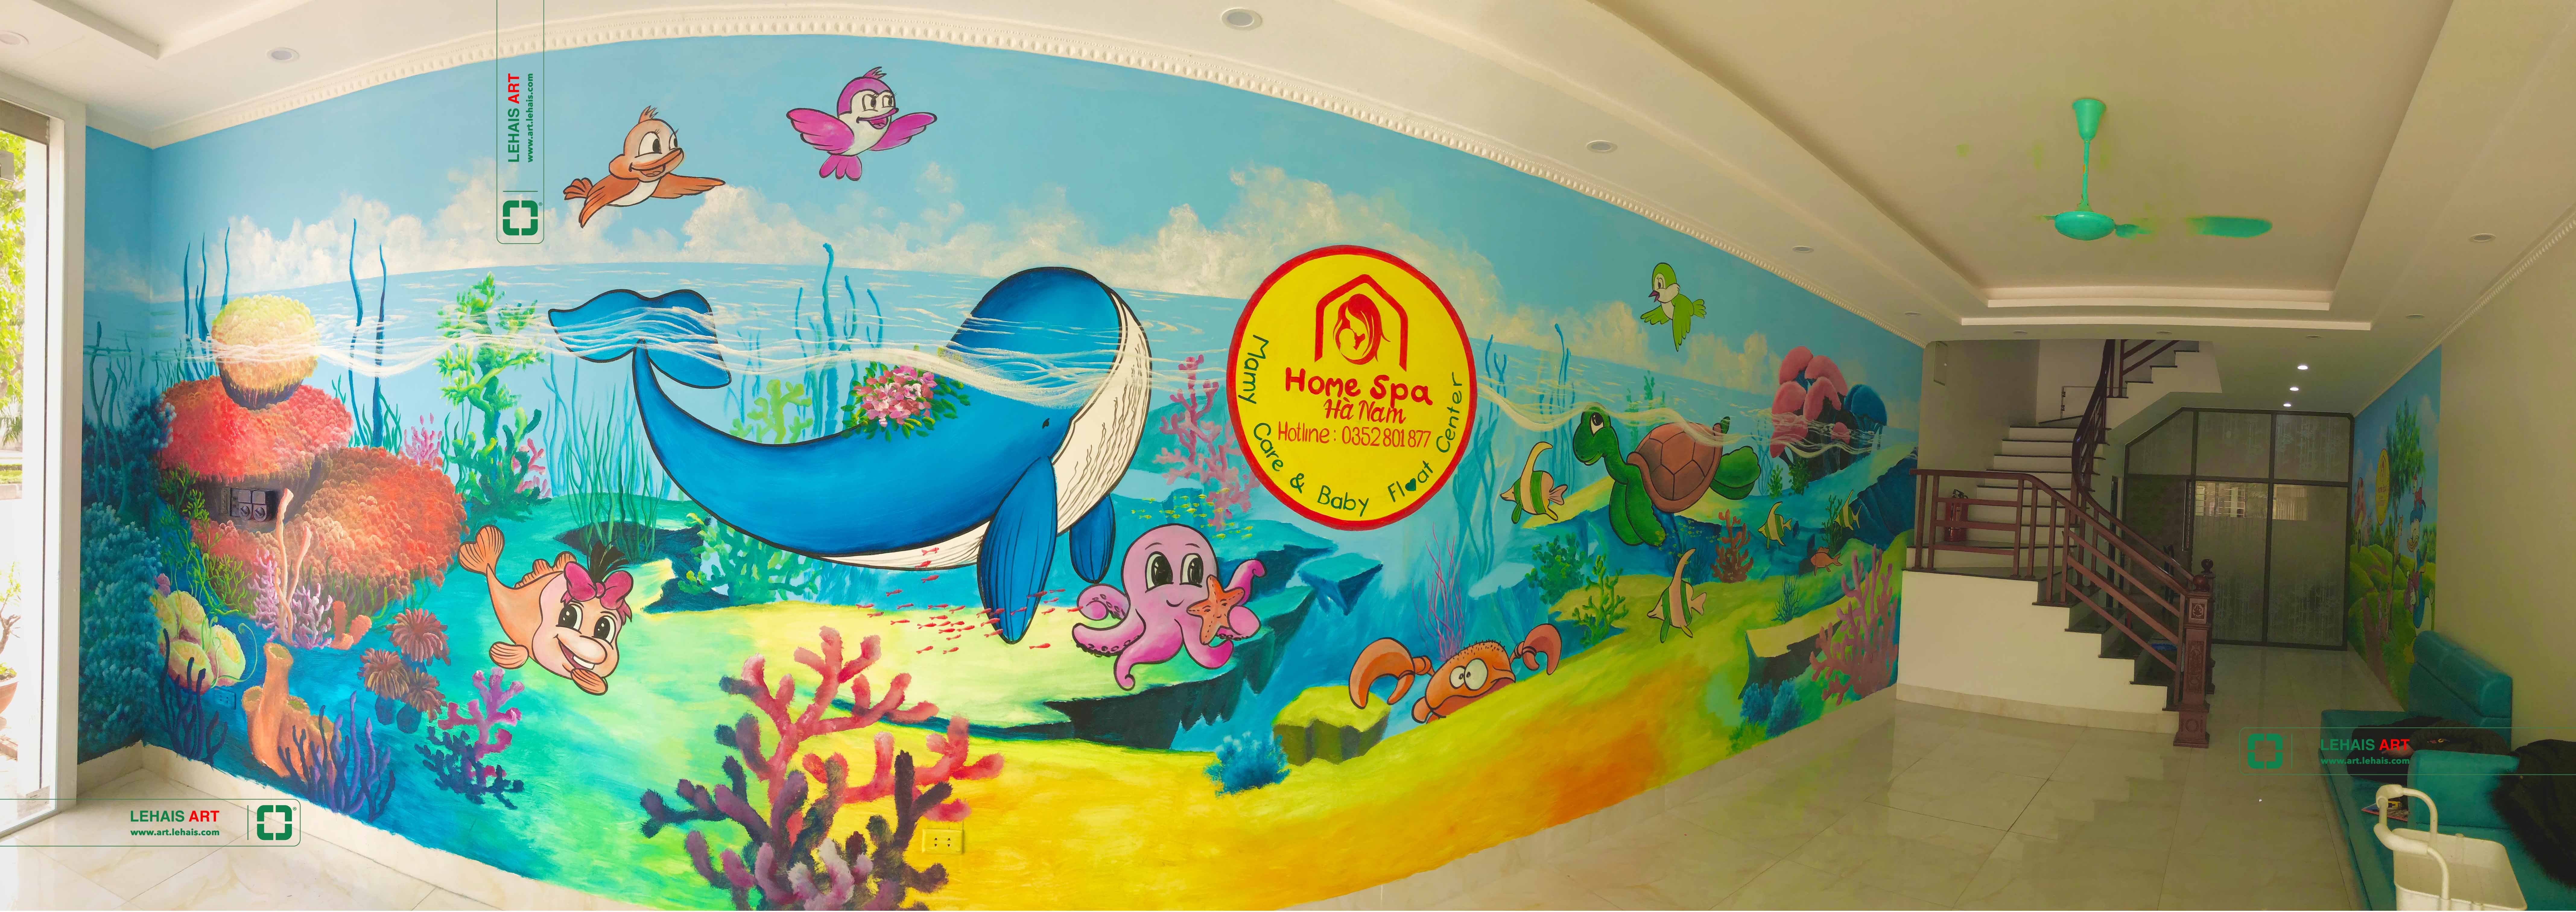 Vẽ trang trí tranh trên tường tại Home Spa cơ sở Hà Nam - TT201LHAR